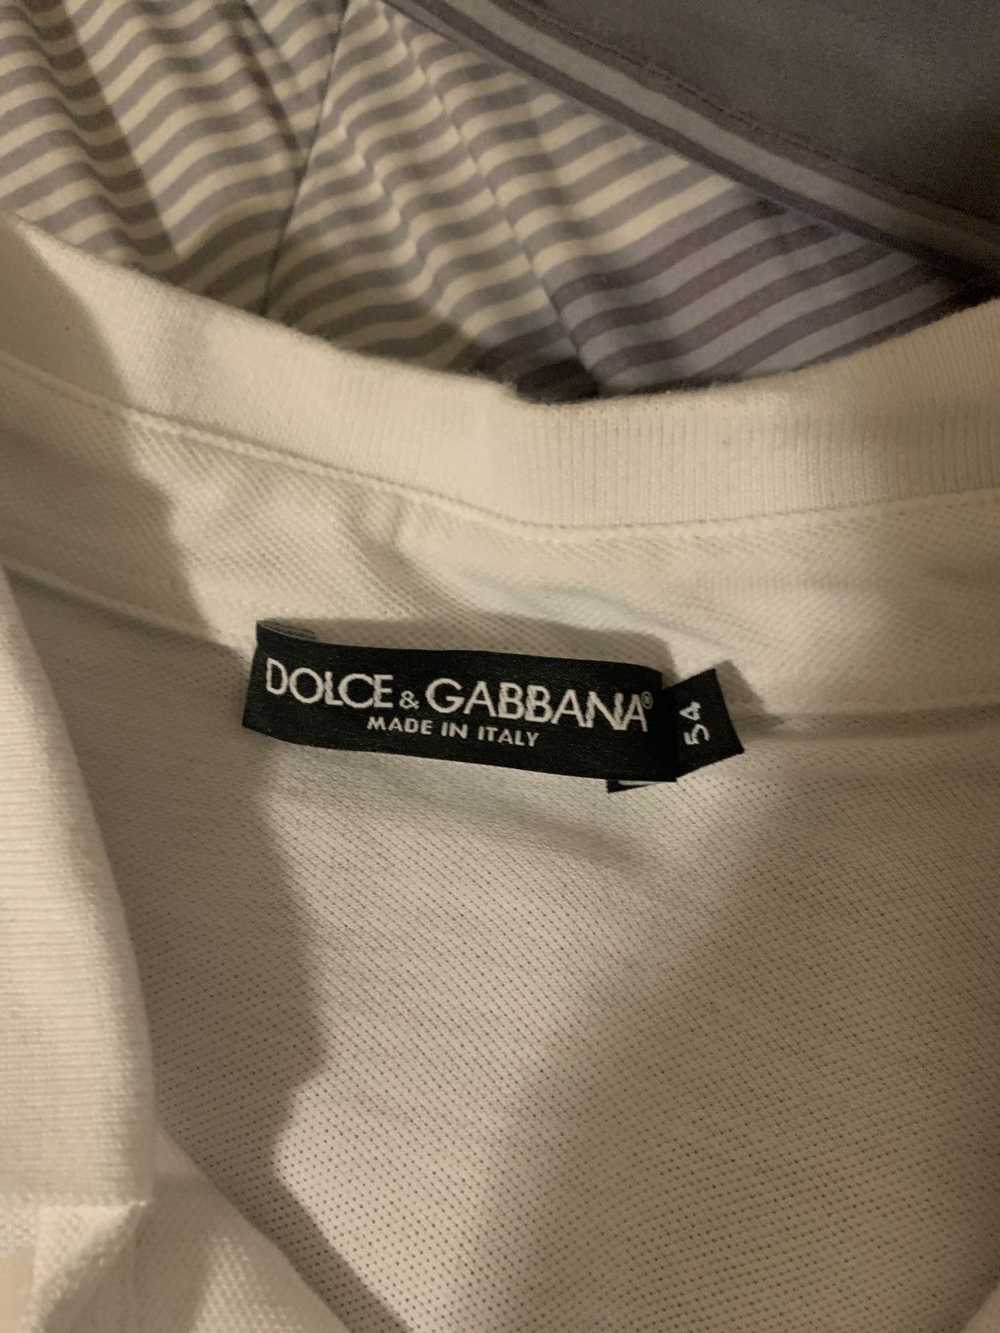 Dolce & Gabbana Dolce & gabbana polo - image 3